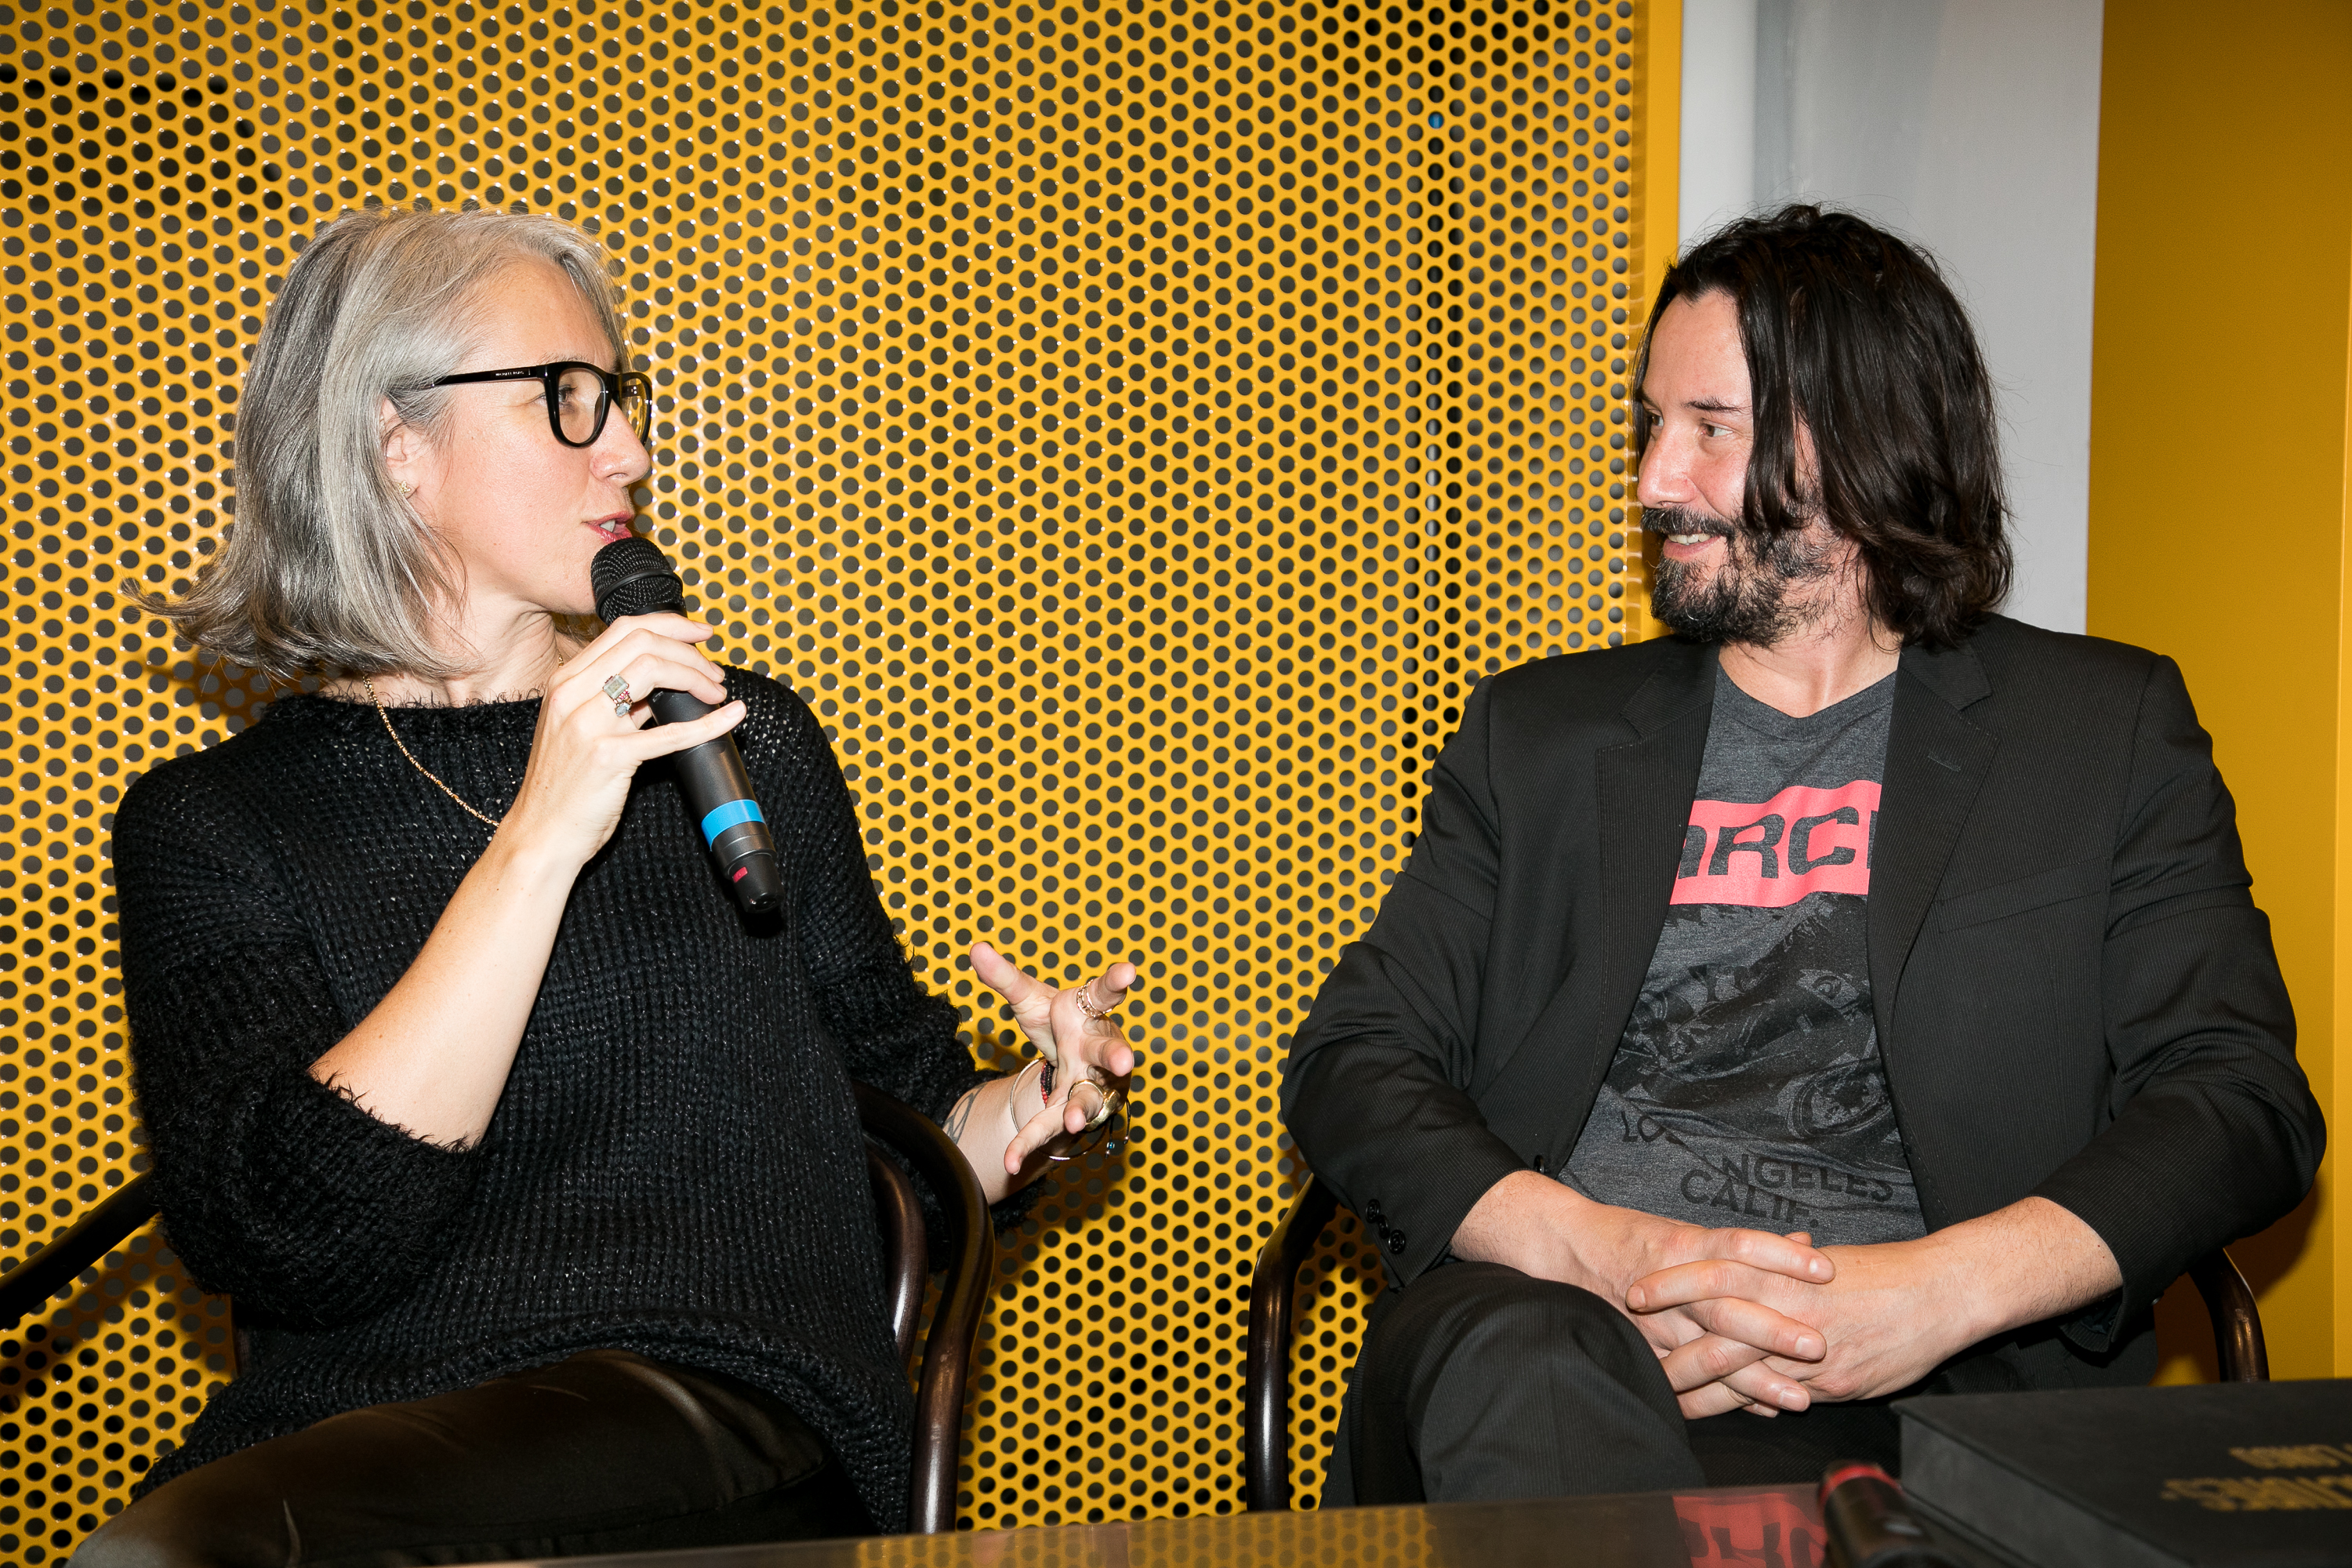 Alexandra Grant avec Keanu Reeves lors d'un événement pour le lancement des livres “X Artists” le 10 novembre 2017 à Paris, France. | Source : Getty Images